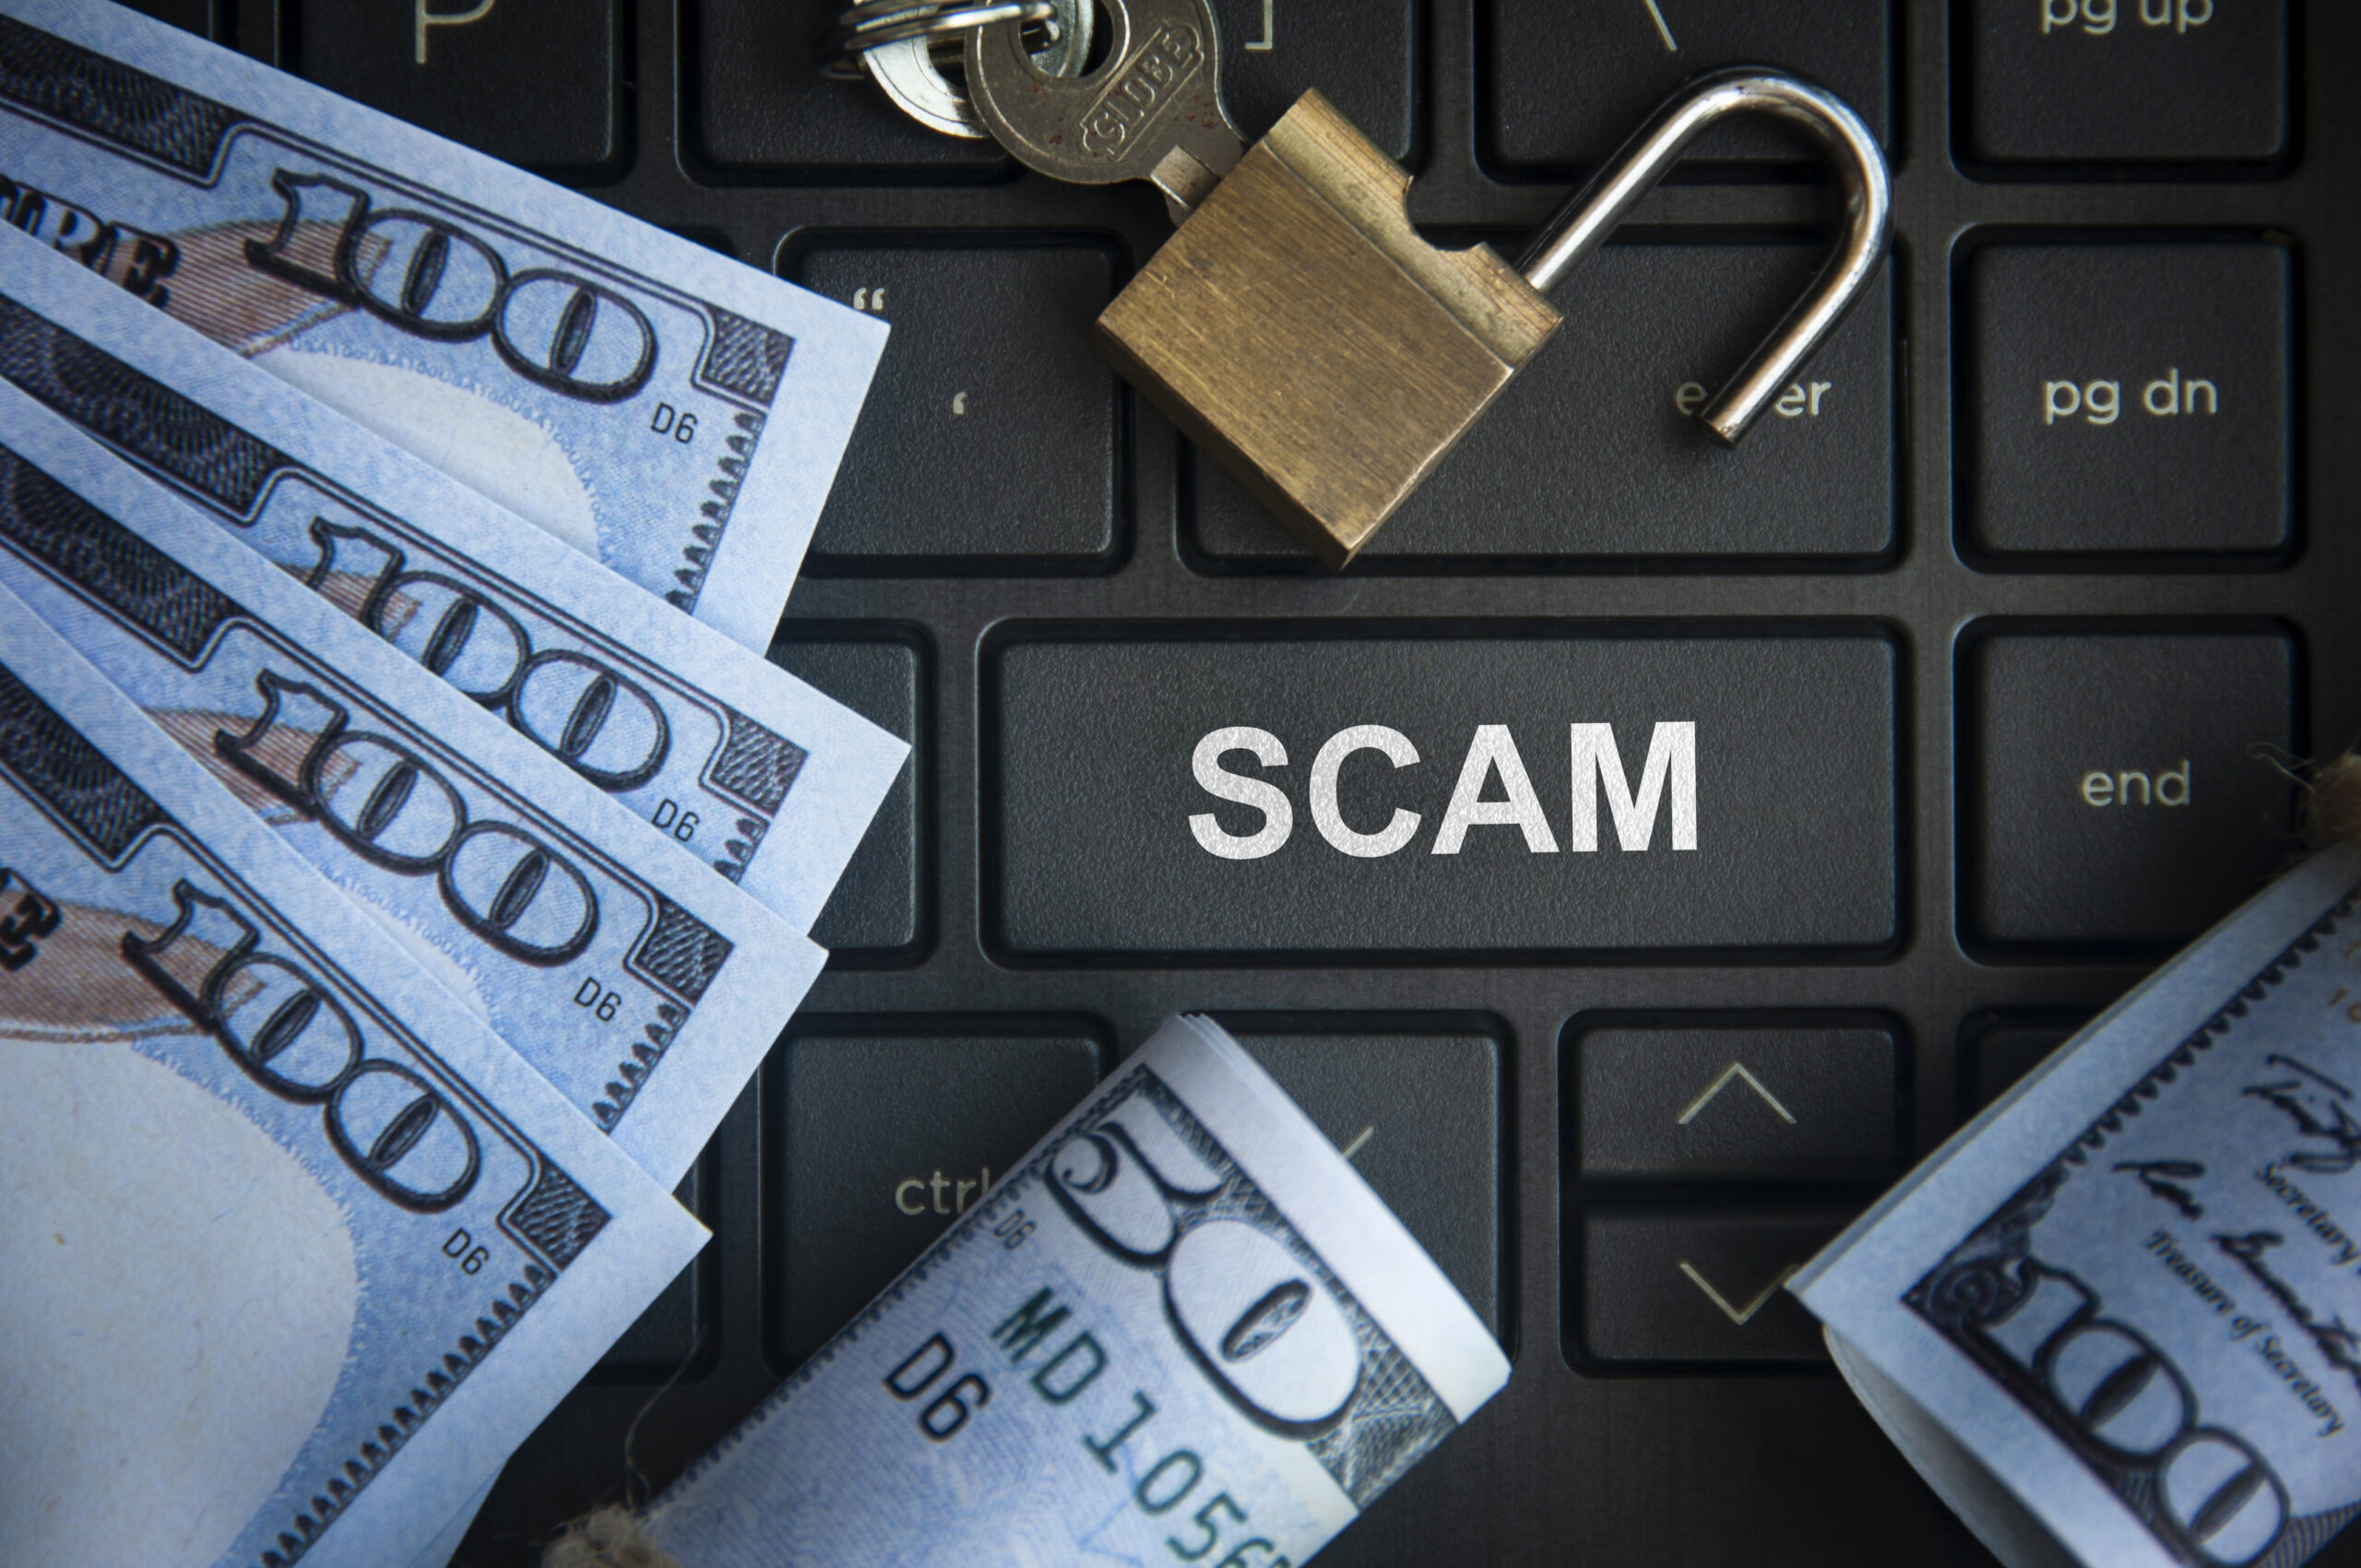 Avoiding financial fraud online